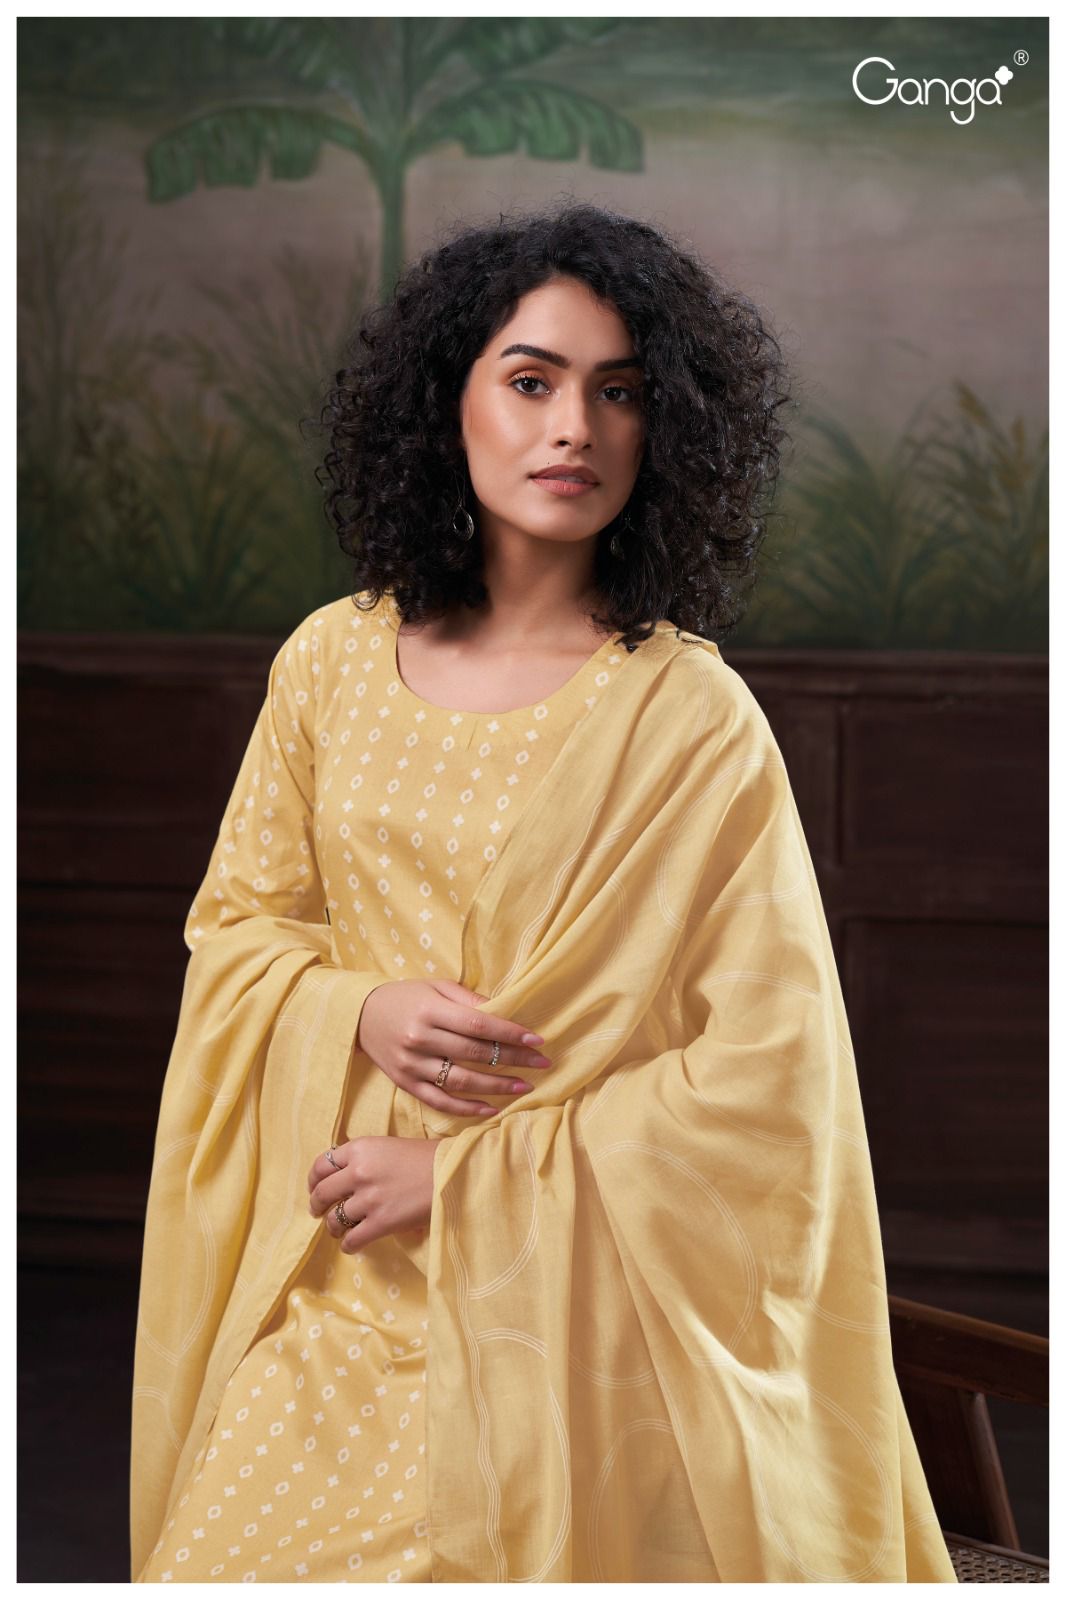 Shivika 2678 Ganga Cotton Plazzo Style Suits Wholesale